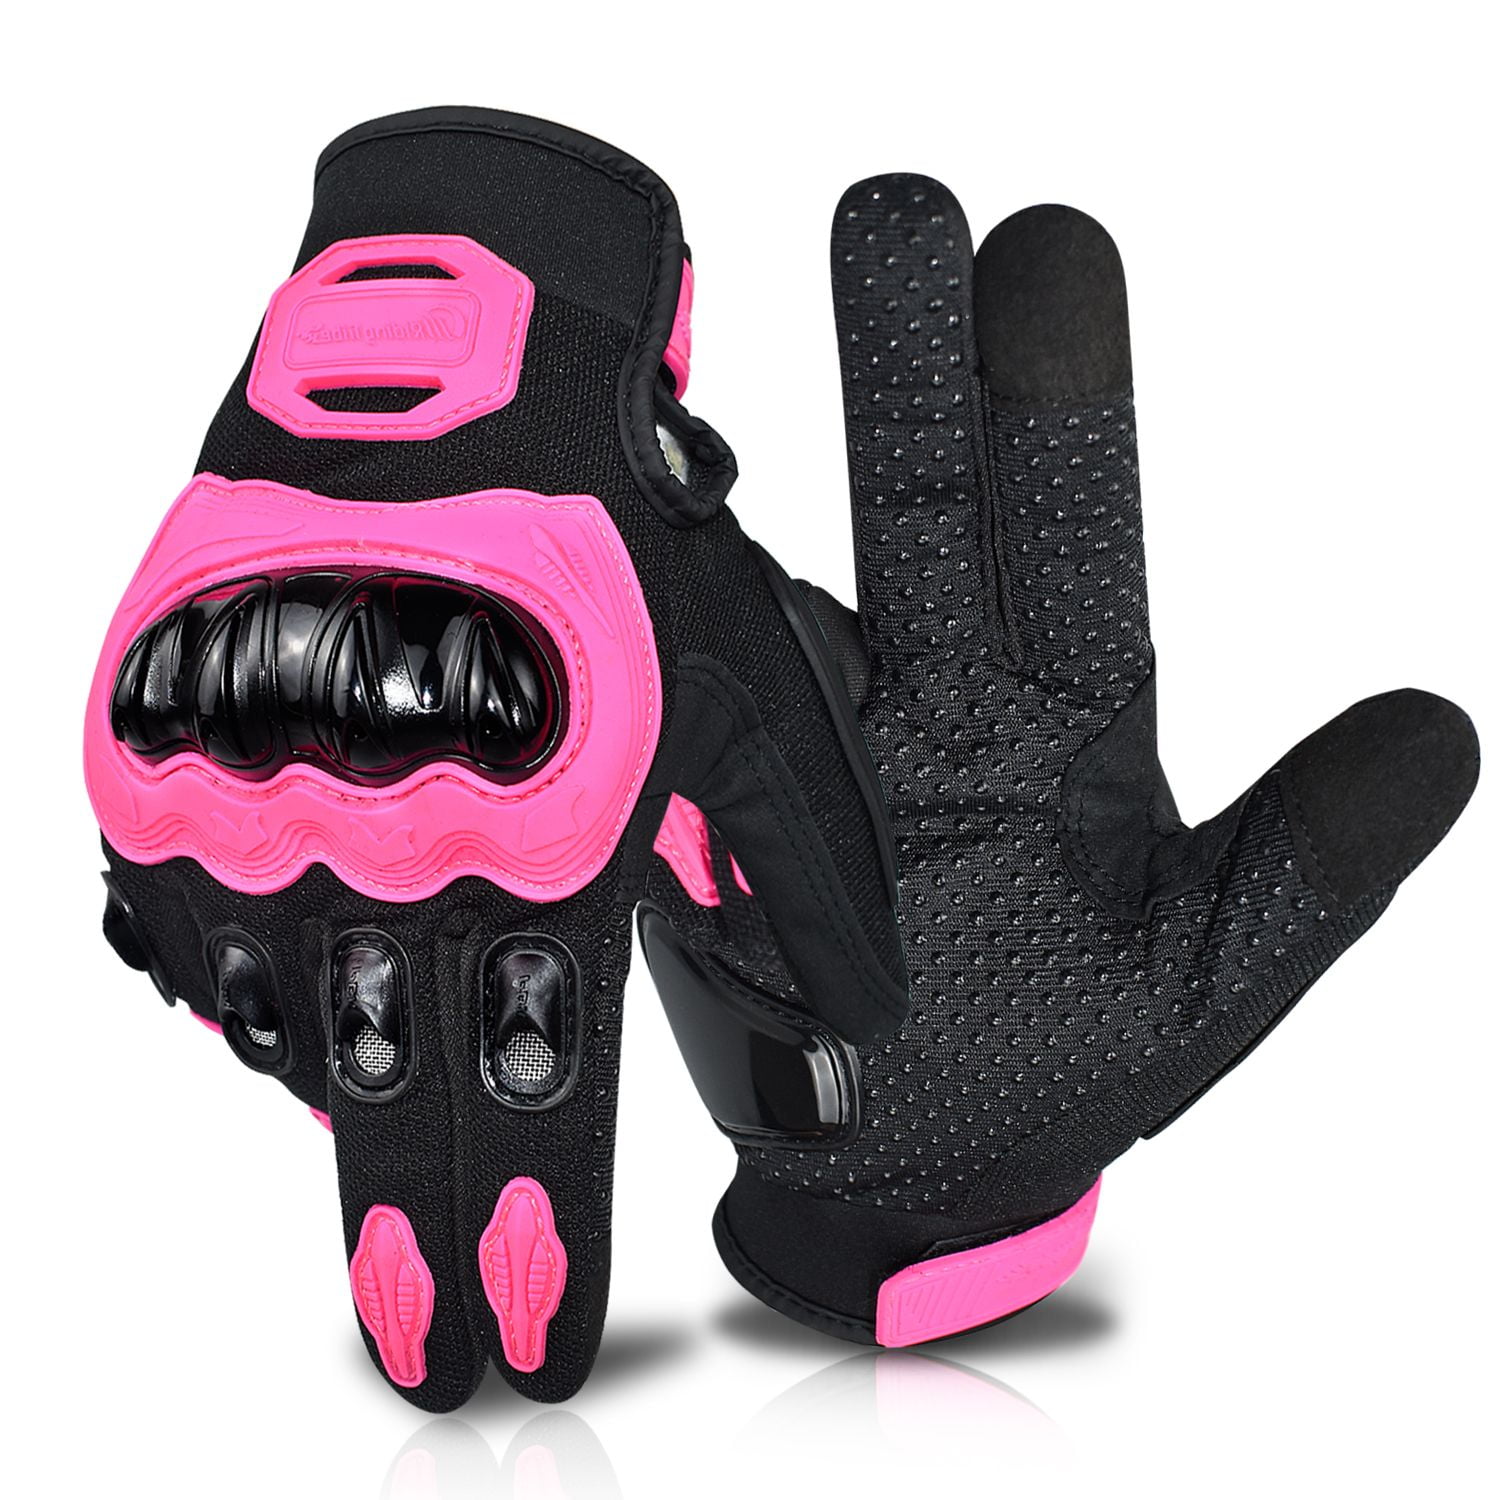 2× Summer Motorcycle Gloves Motorbike Motocross Motor Bike Full Fingered Protect 